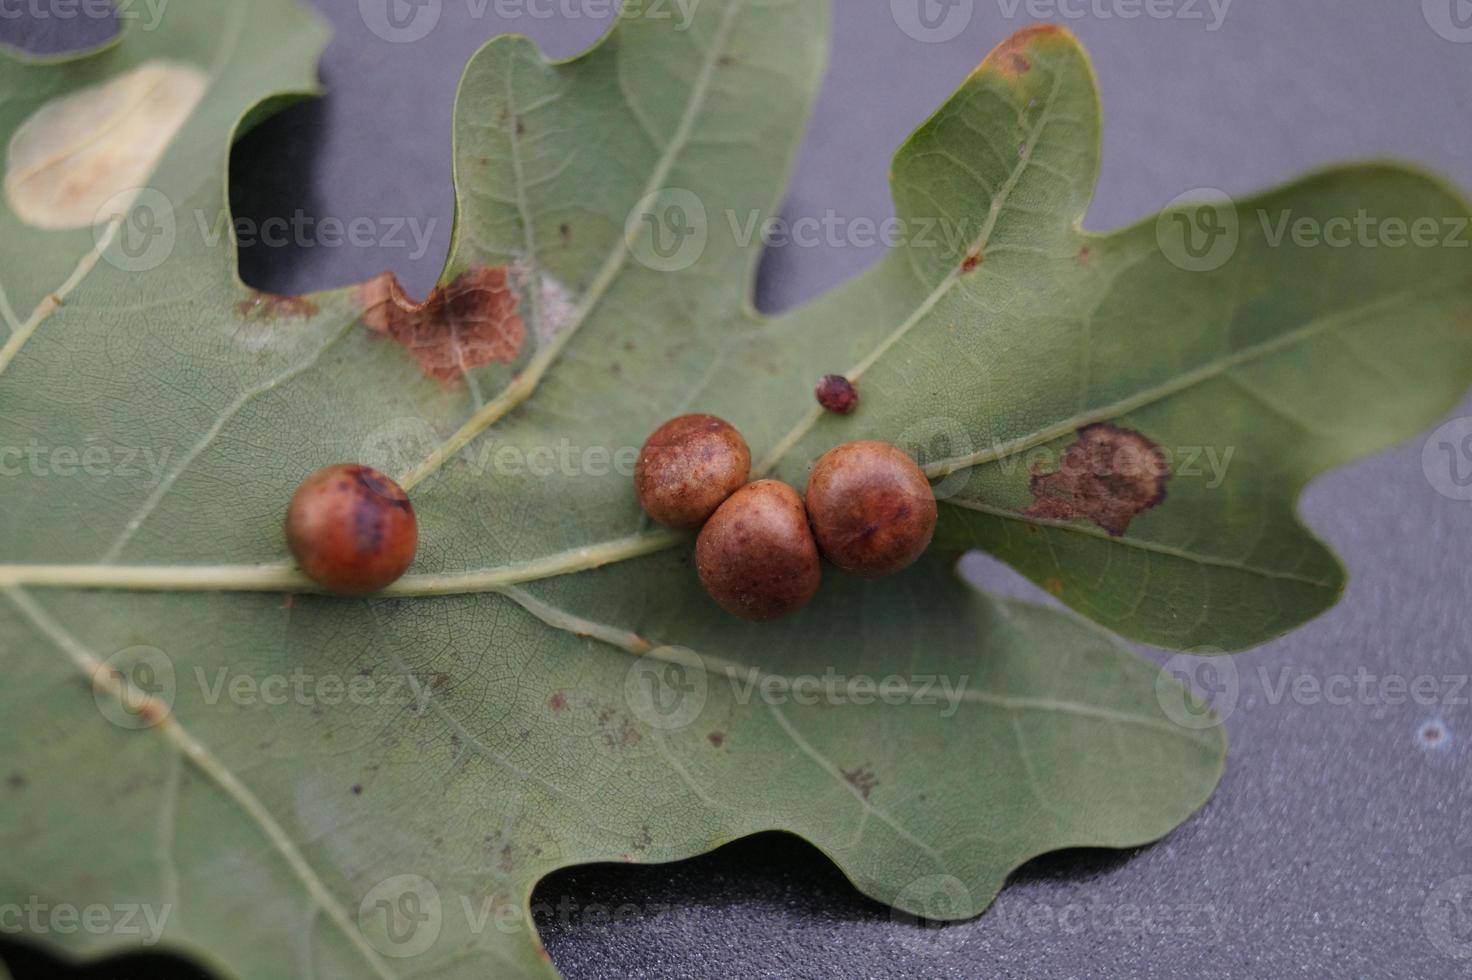 cynips quercusfolii gall balls on oak leaf photo